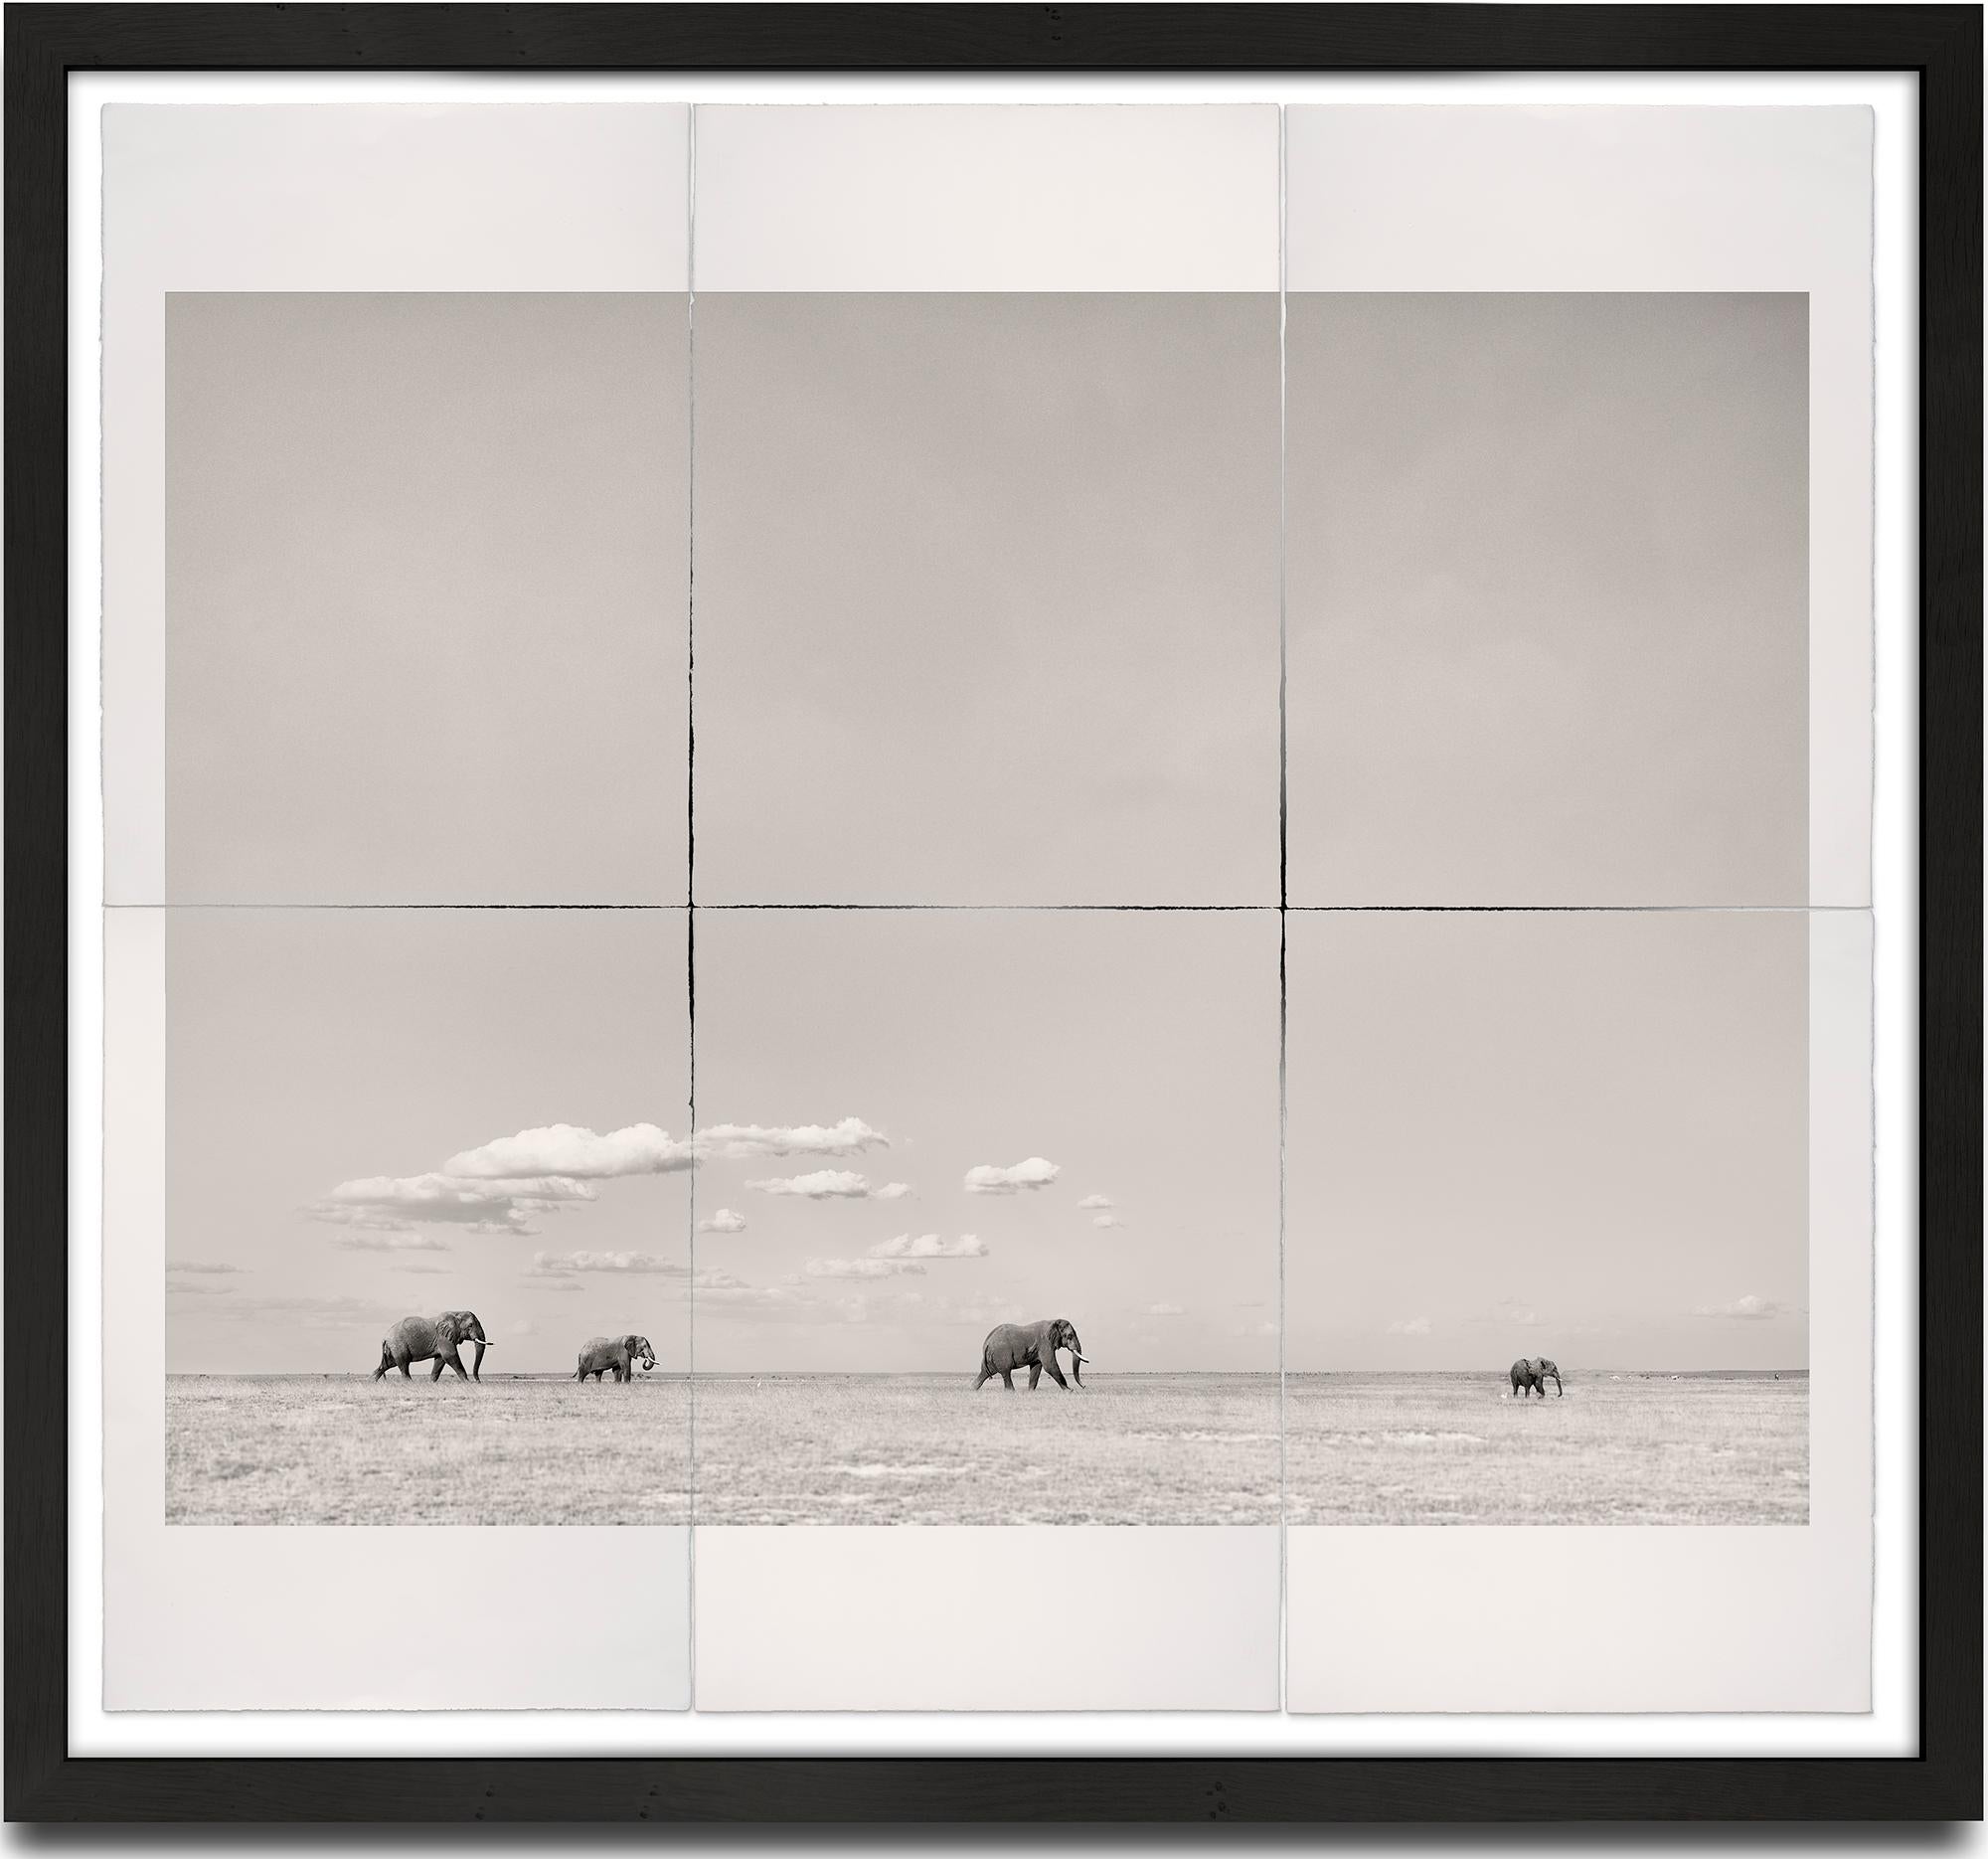 Joachim Schmeisser Landscape Photograph – Tomorrow's Leader, Platin, Tier, Elefant, Schwarz-Weiß-Fotografie